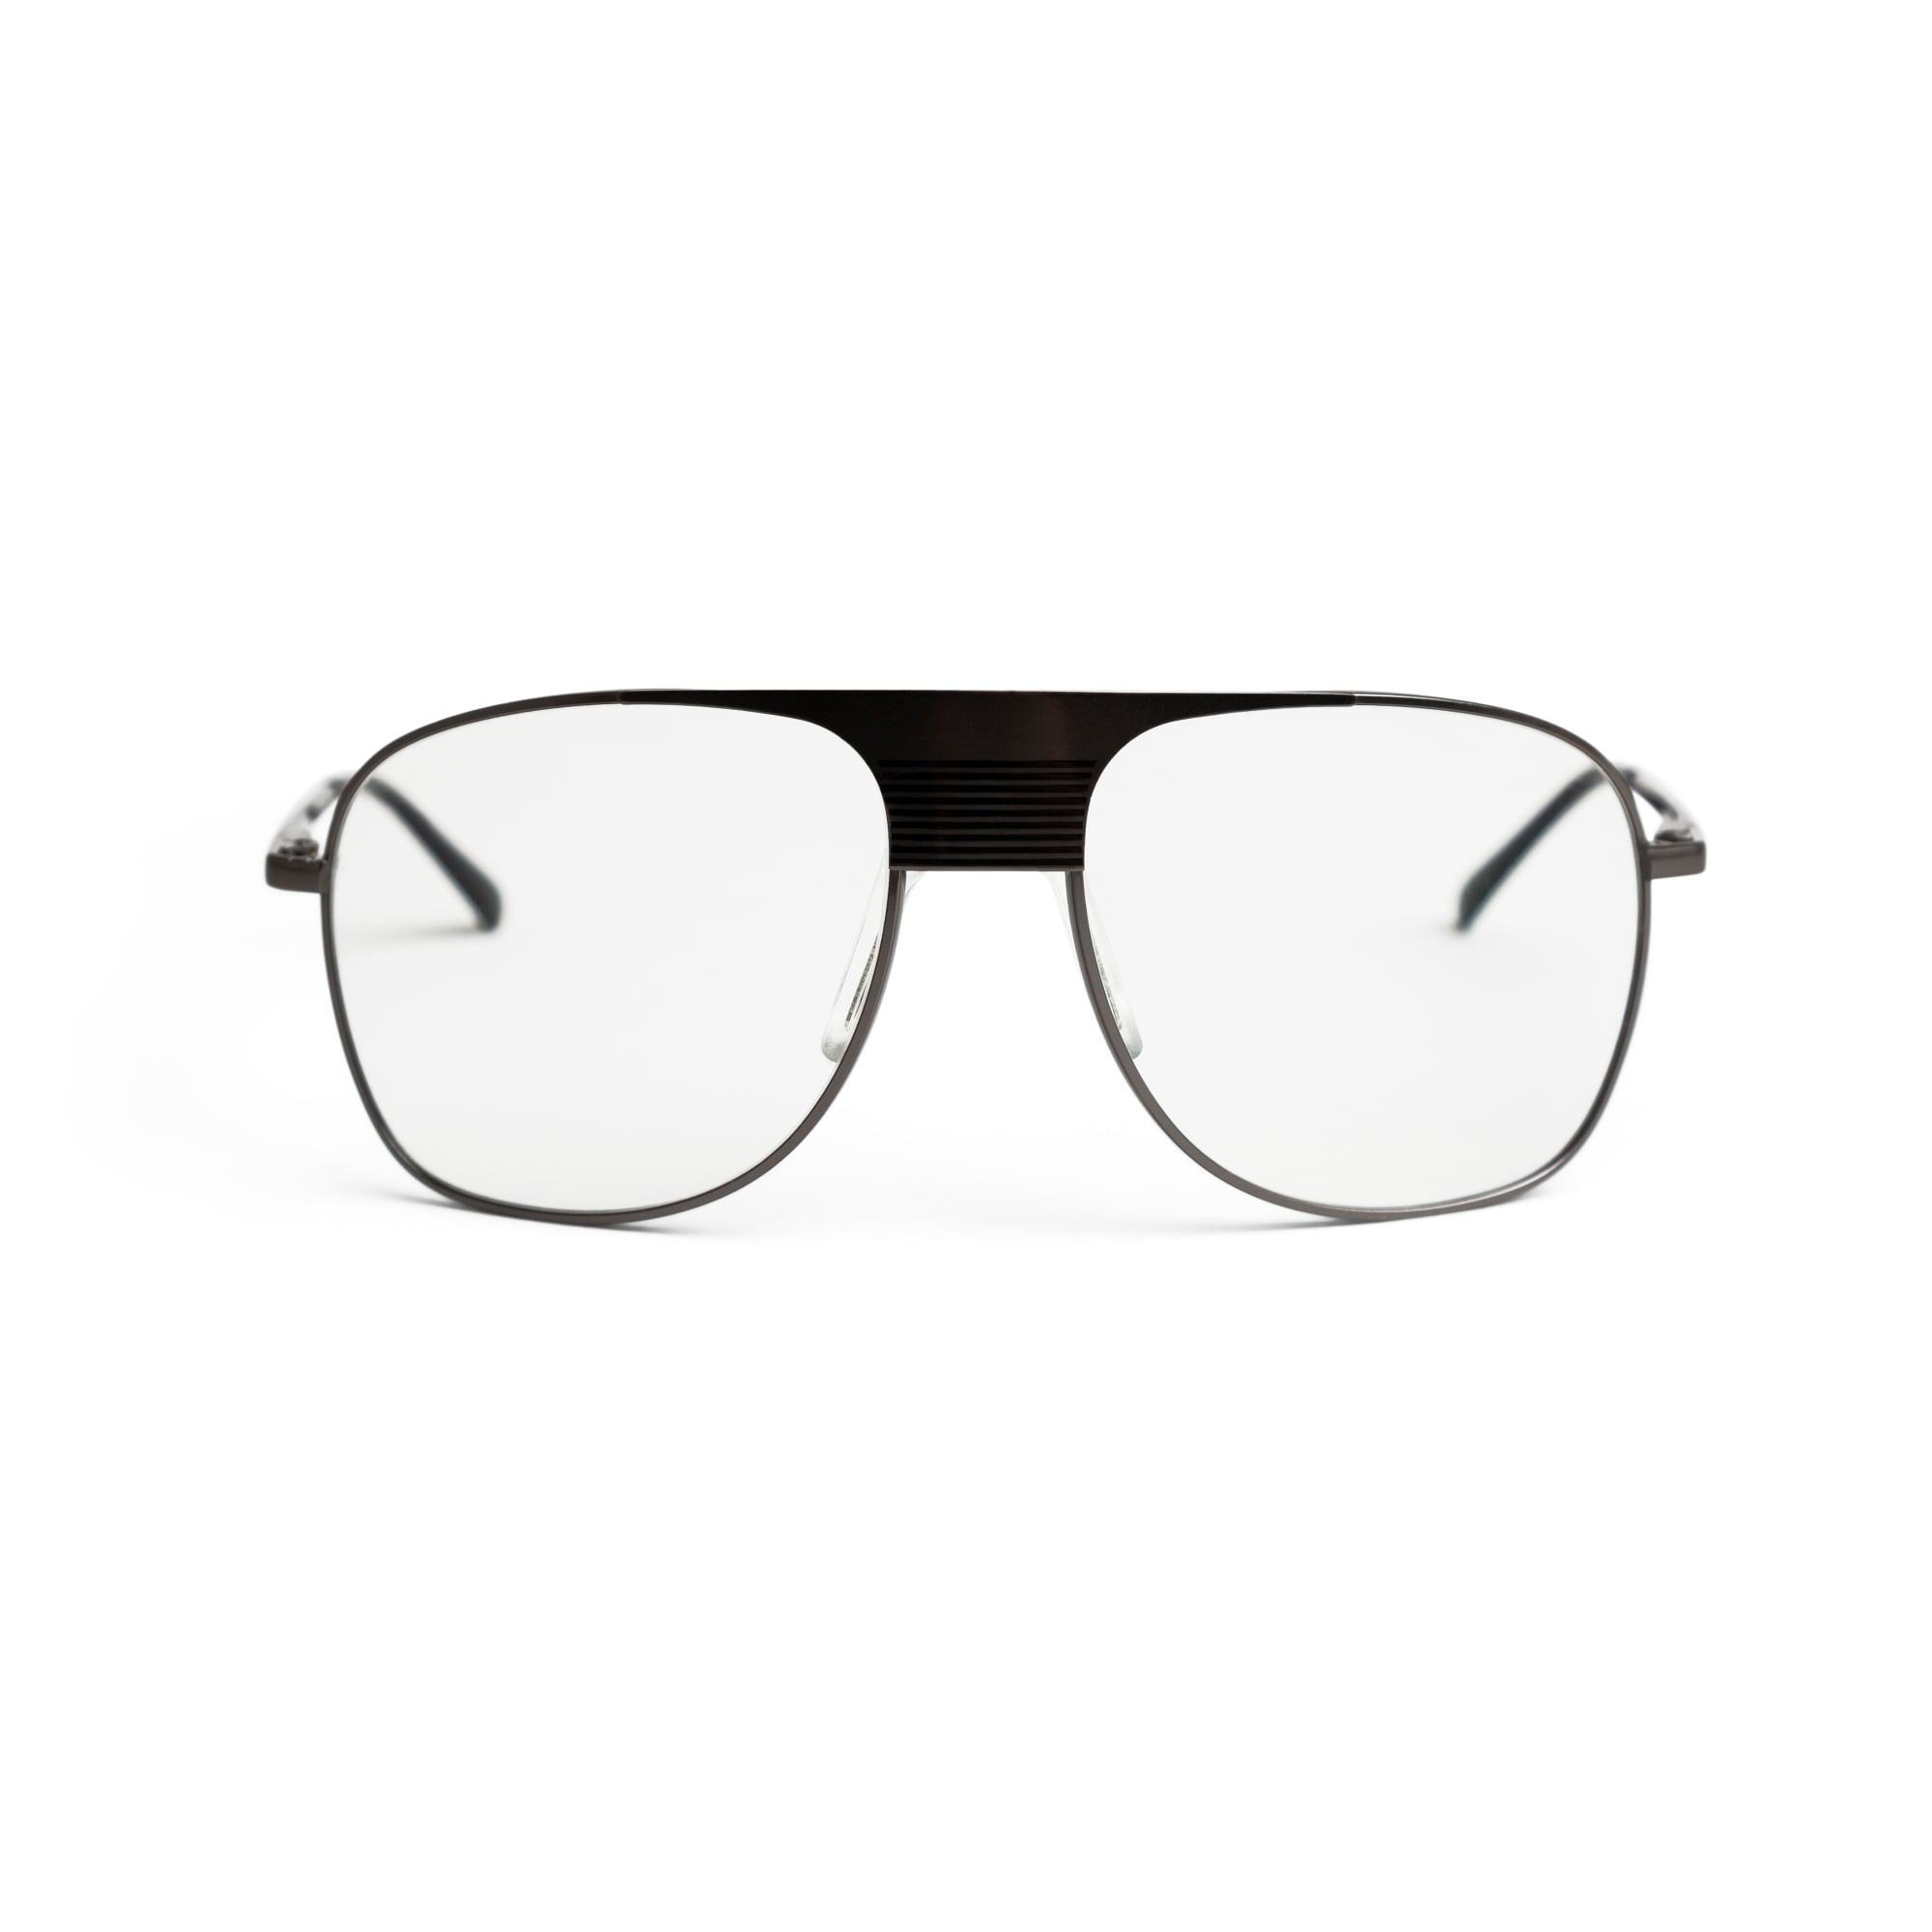 UK Trotting kjørebriller, Nova 4 modell